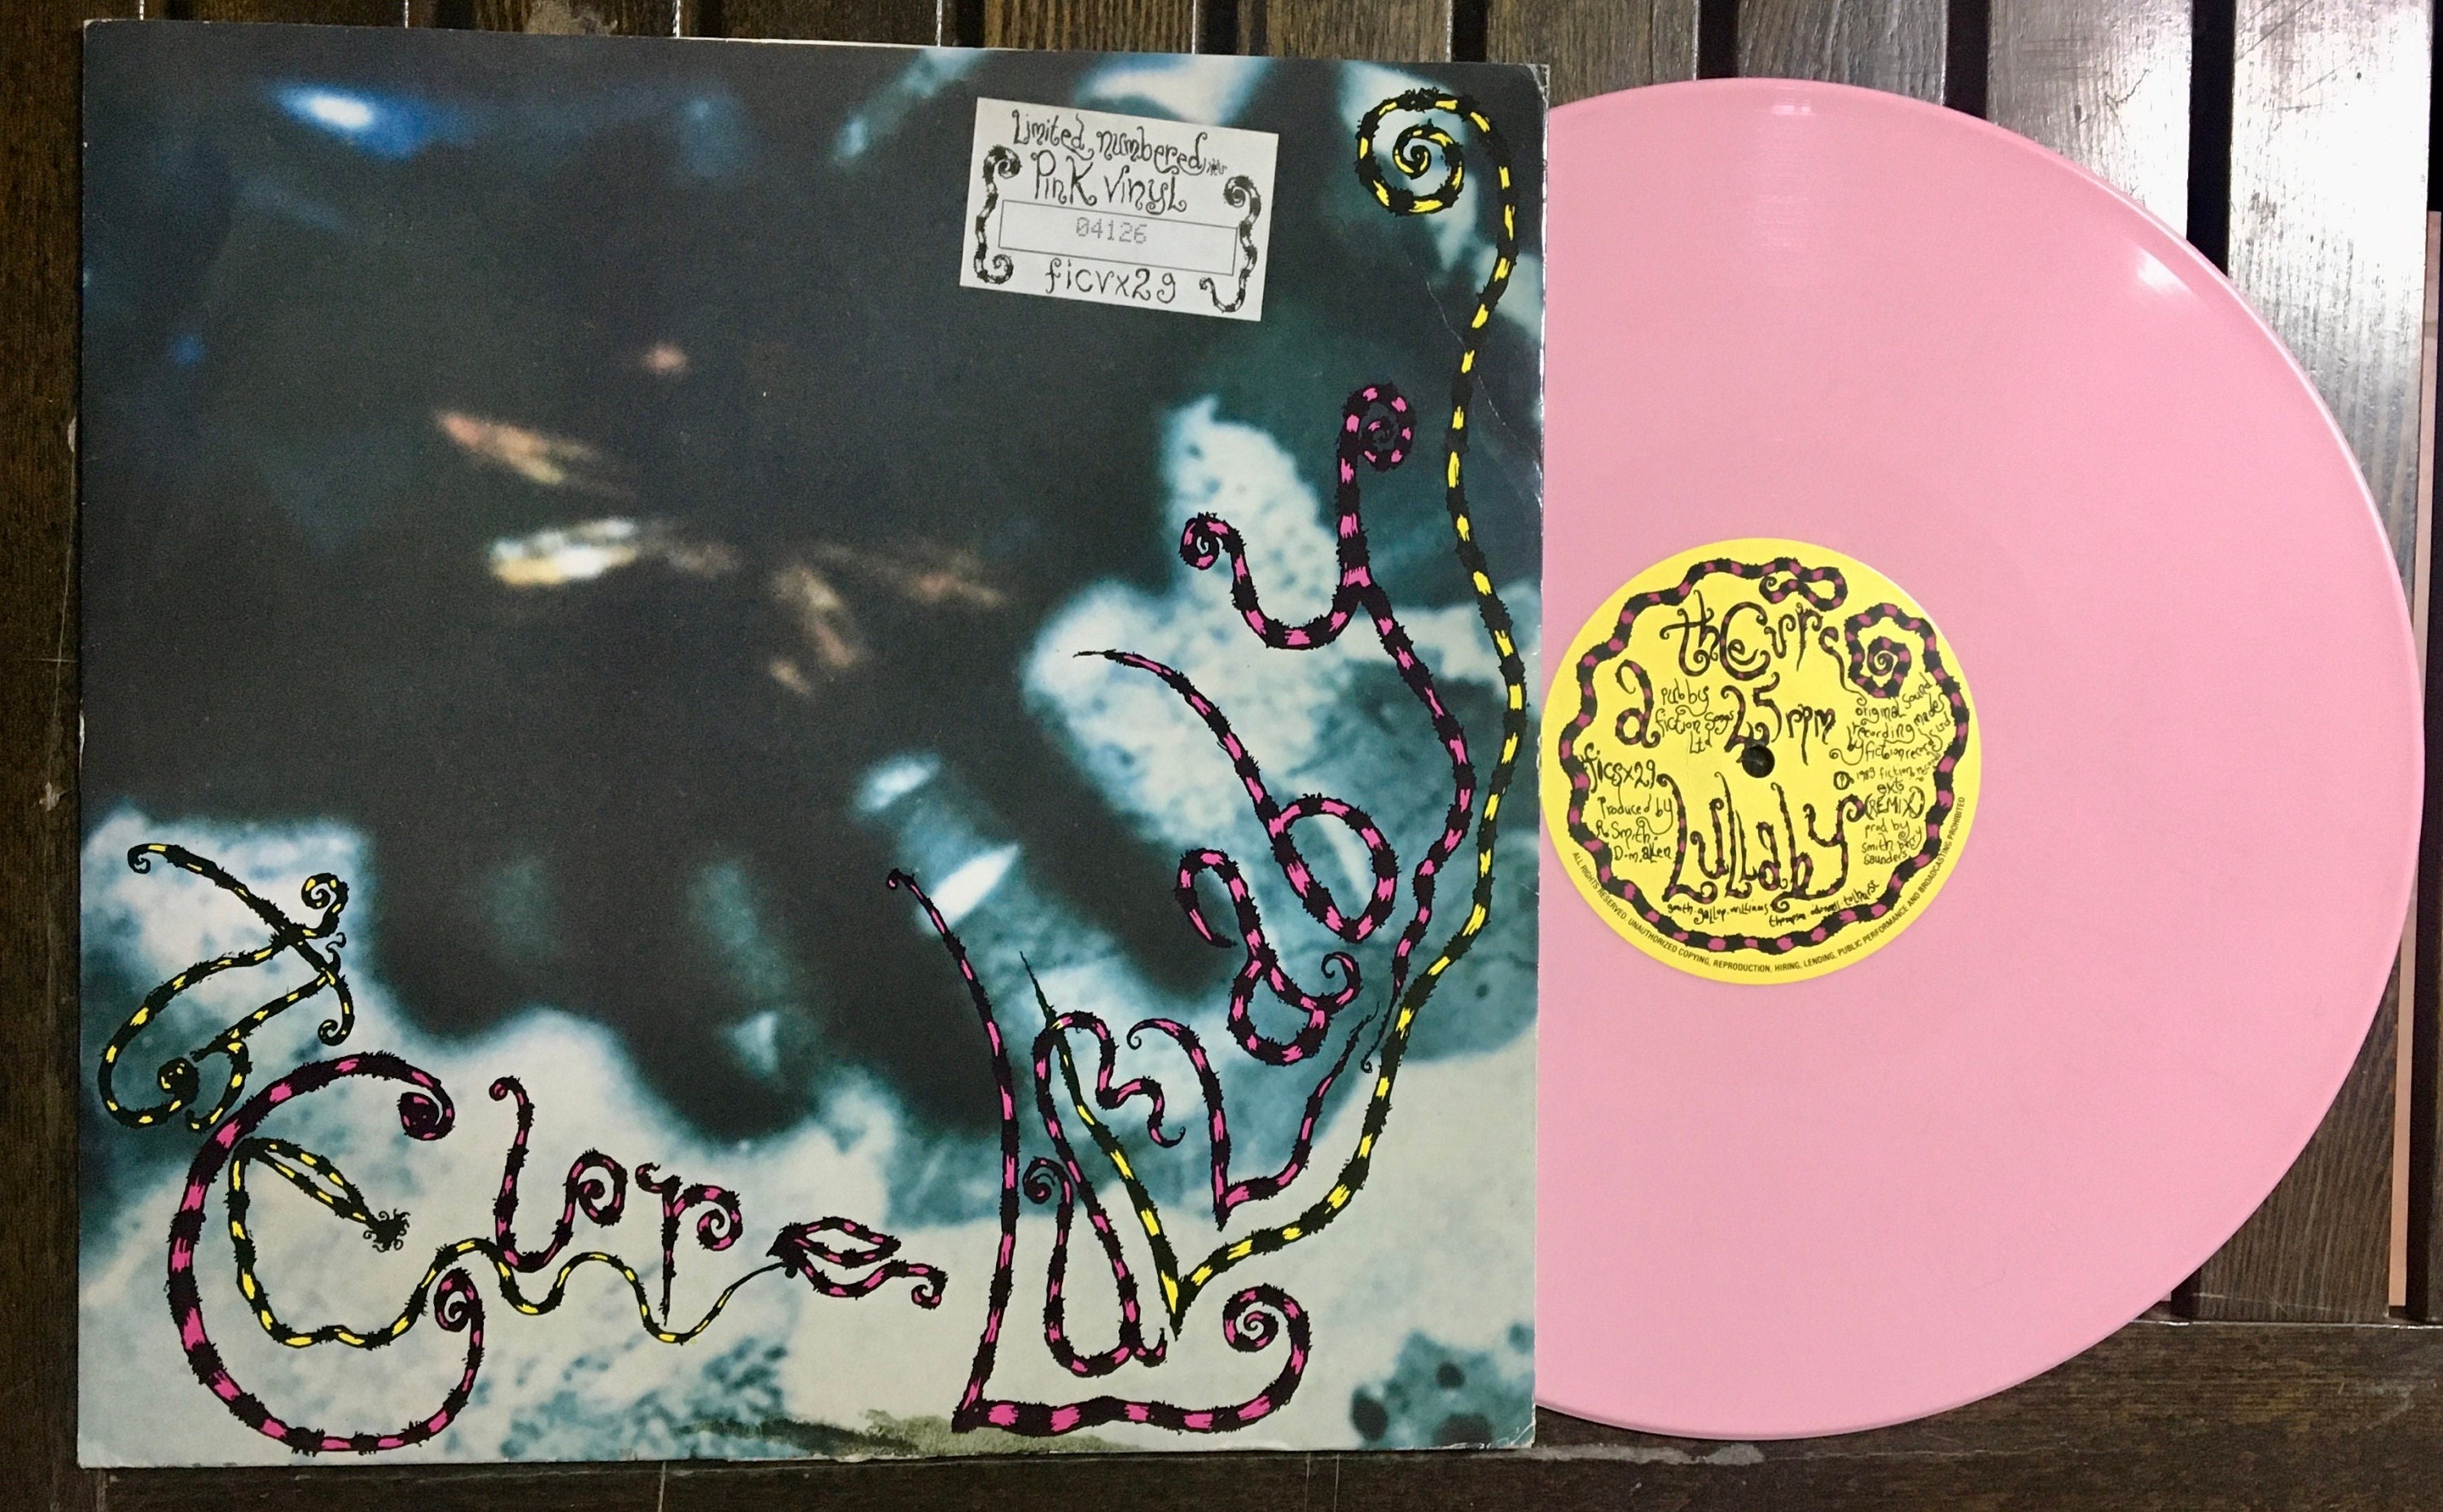 1989 The Cure Lullaby, Vinilo, 12, 45 RPM, Sencillo, Edición